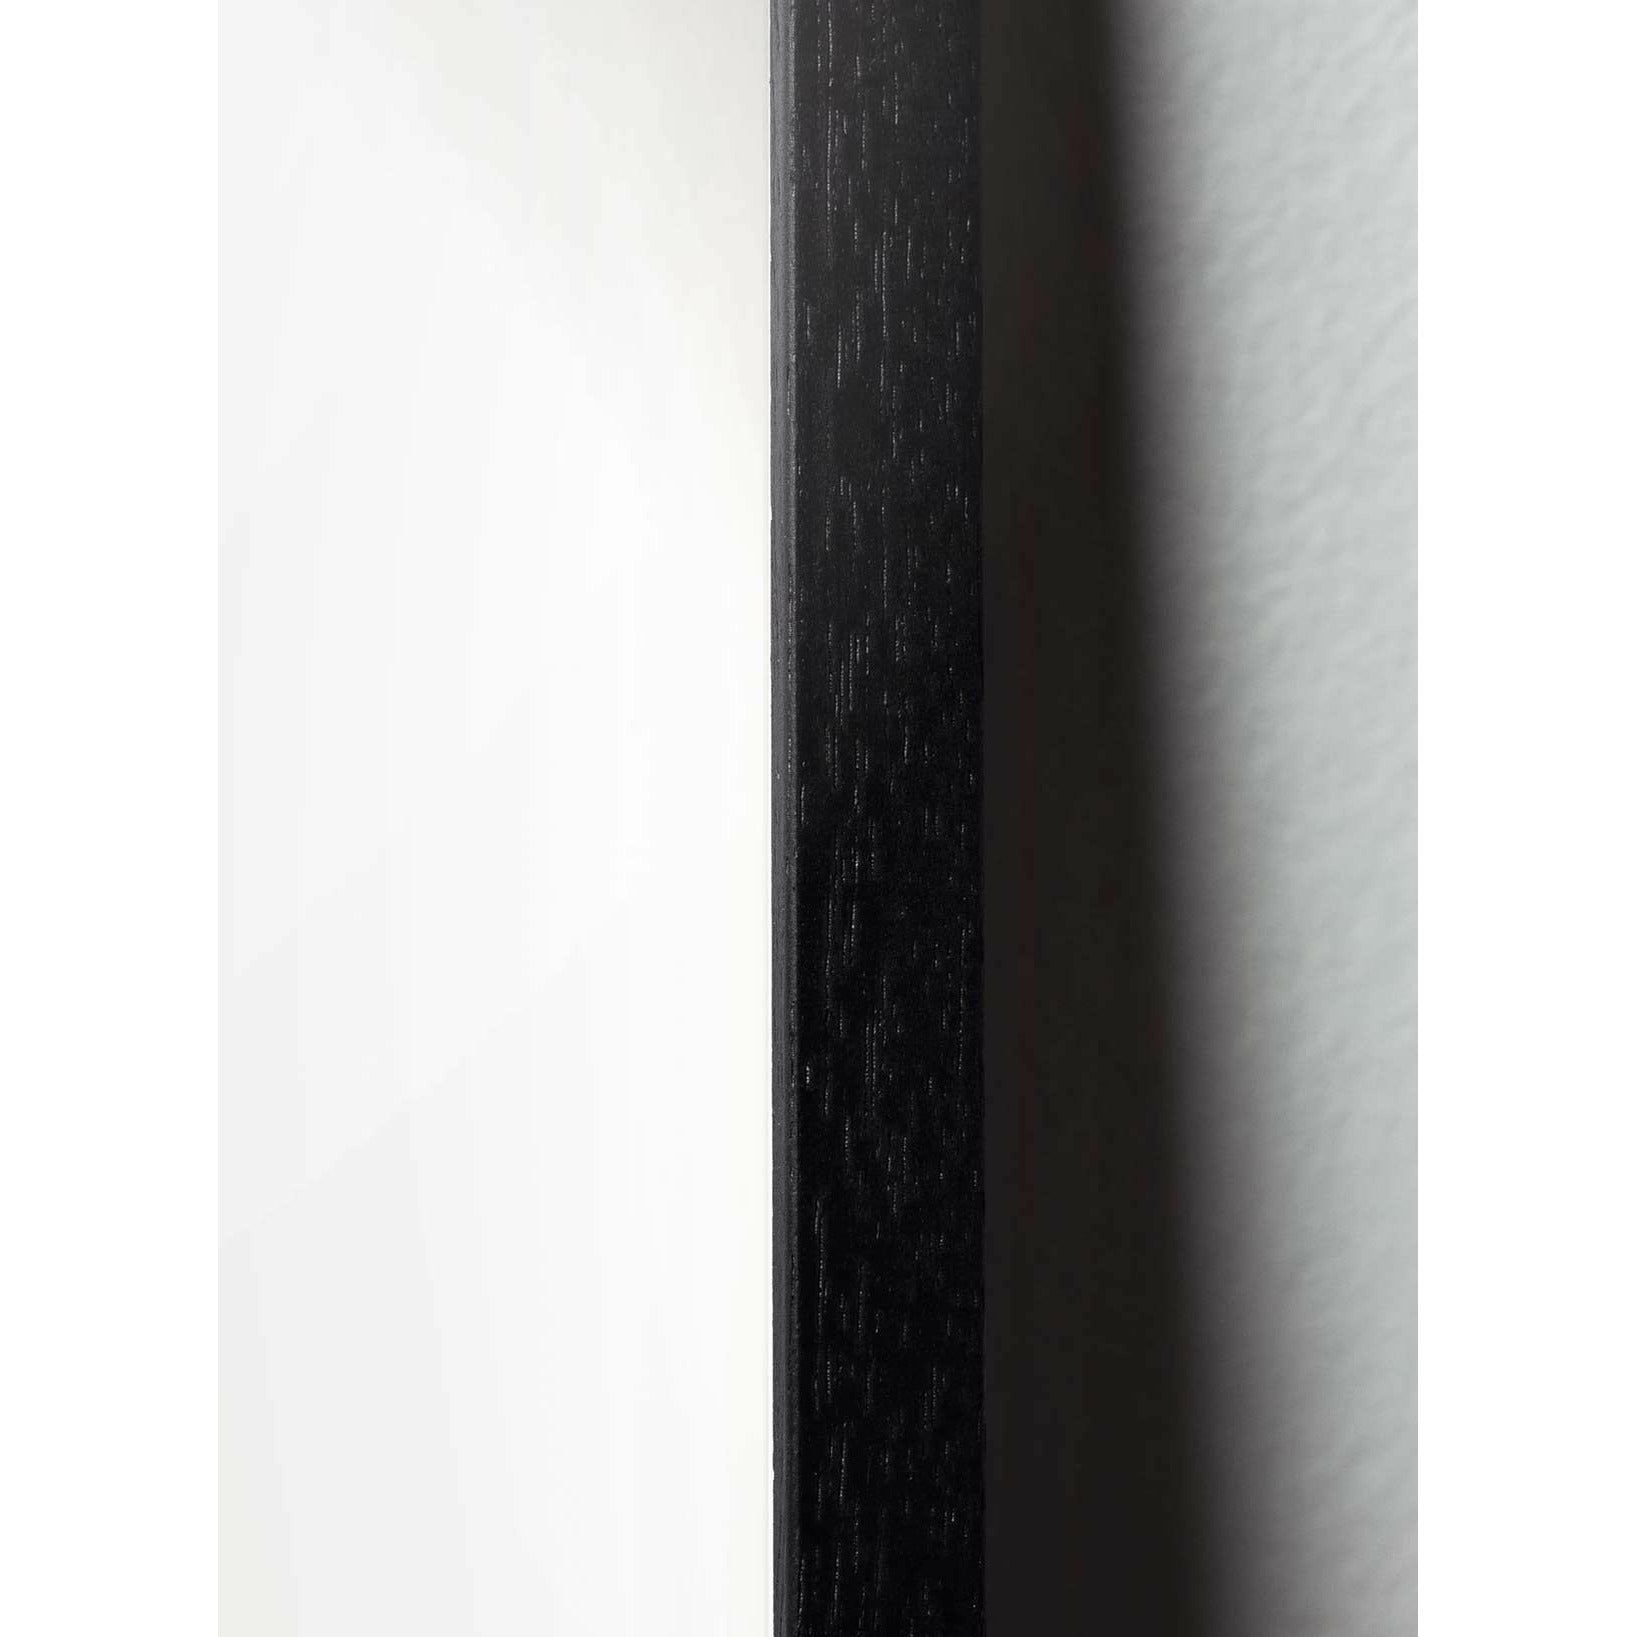 Plakat linii kropli pomysłu, rama w czarnym lakierowanym drewnie 70x100 cm, białe tło